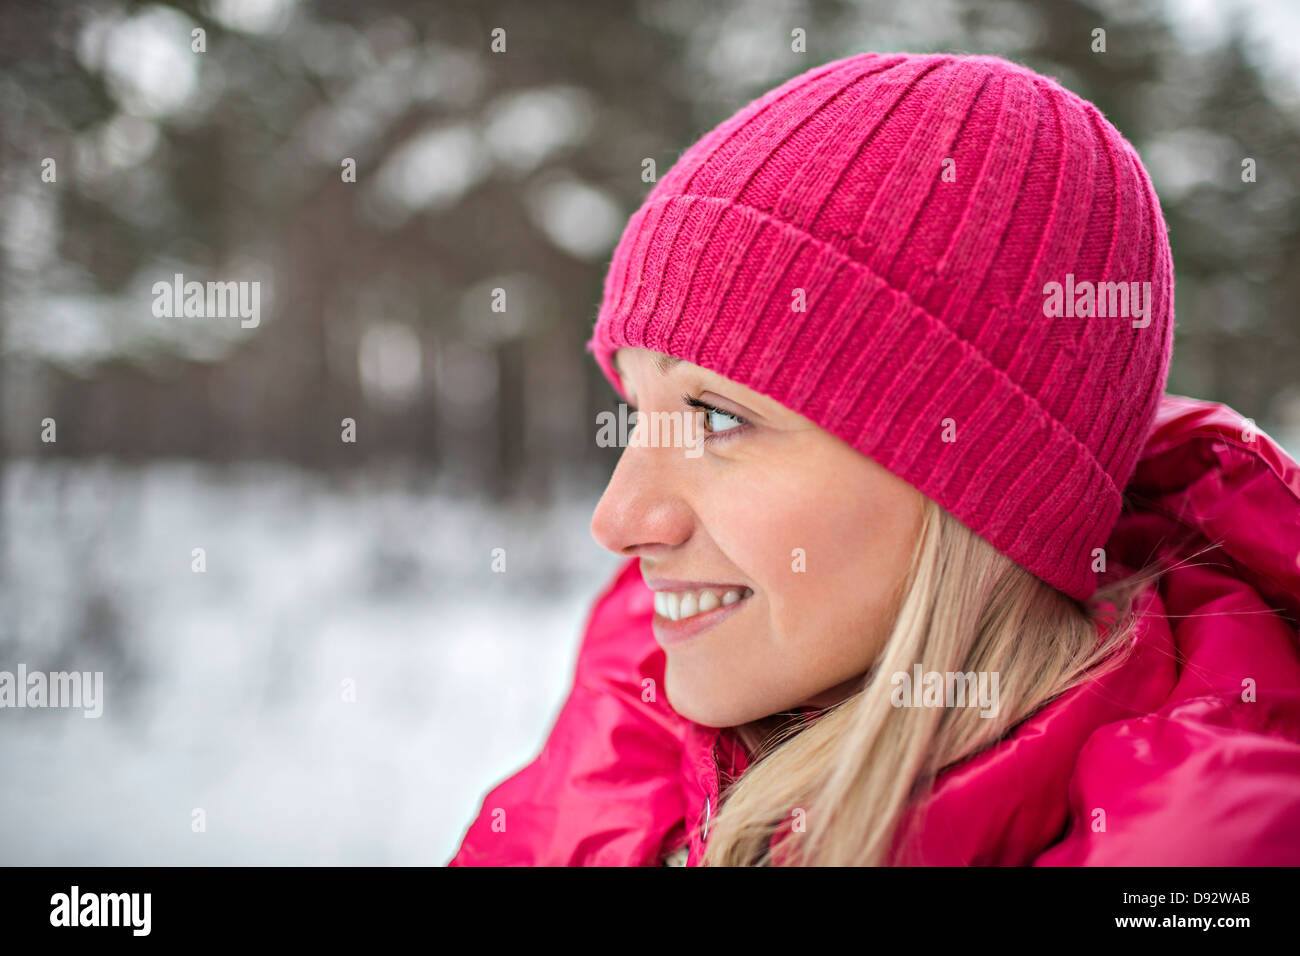 Une femme portant des vêtements d'hiver rose vif Banque D'Images